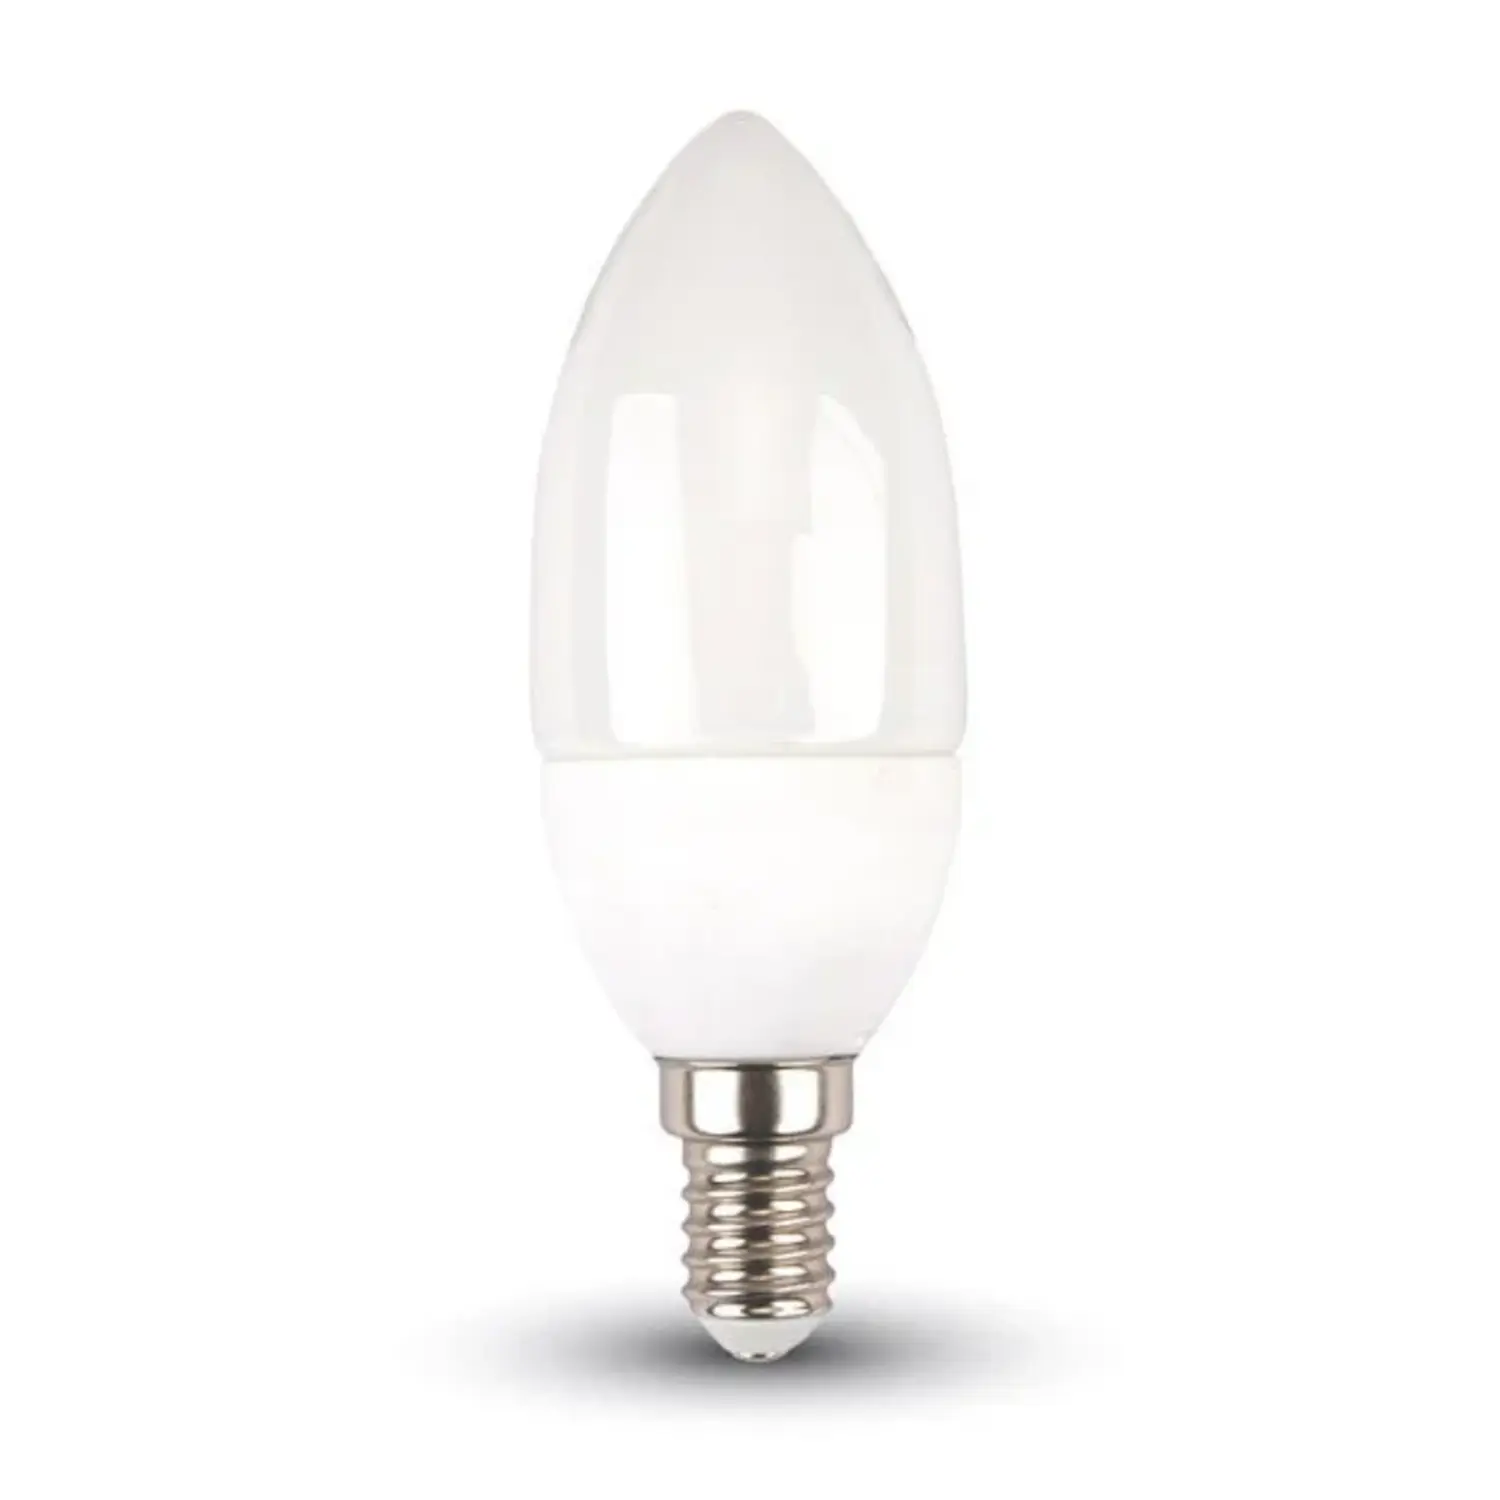 immagine del prodotto lampadina led candela oliva e14 5,50 watt bianco naturale